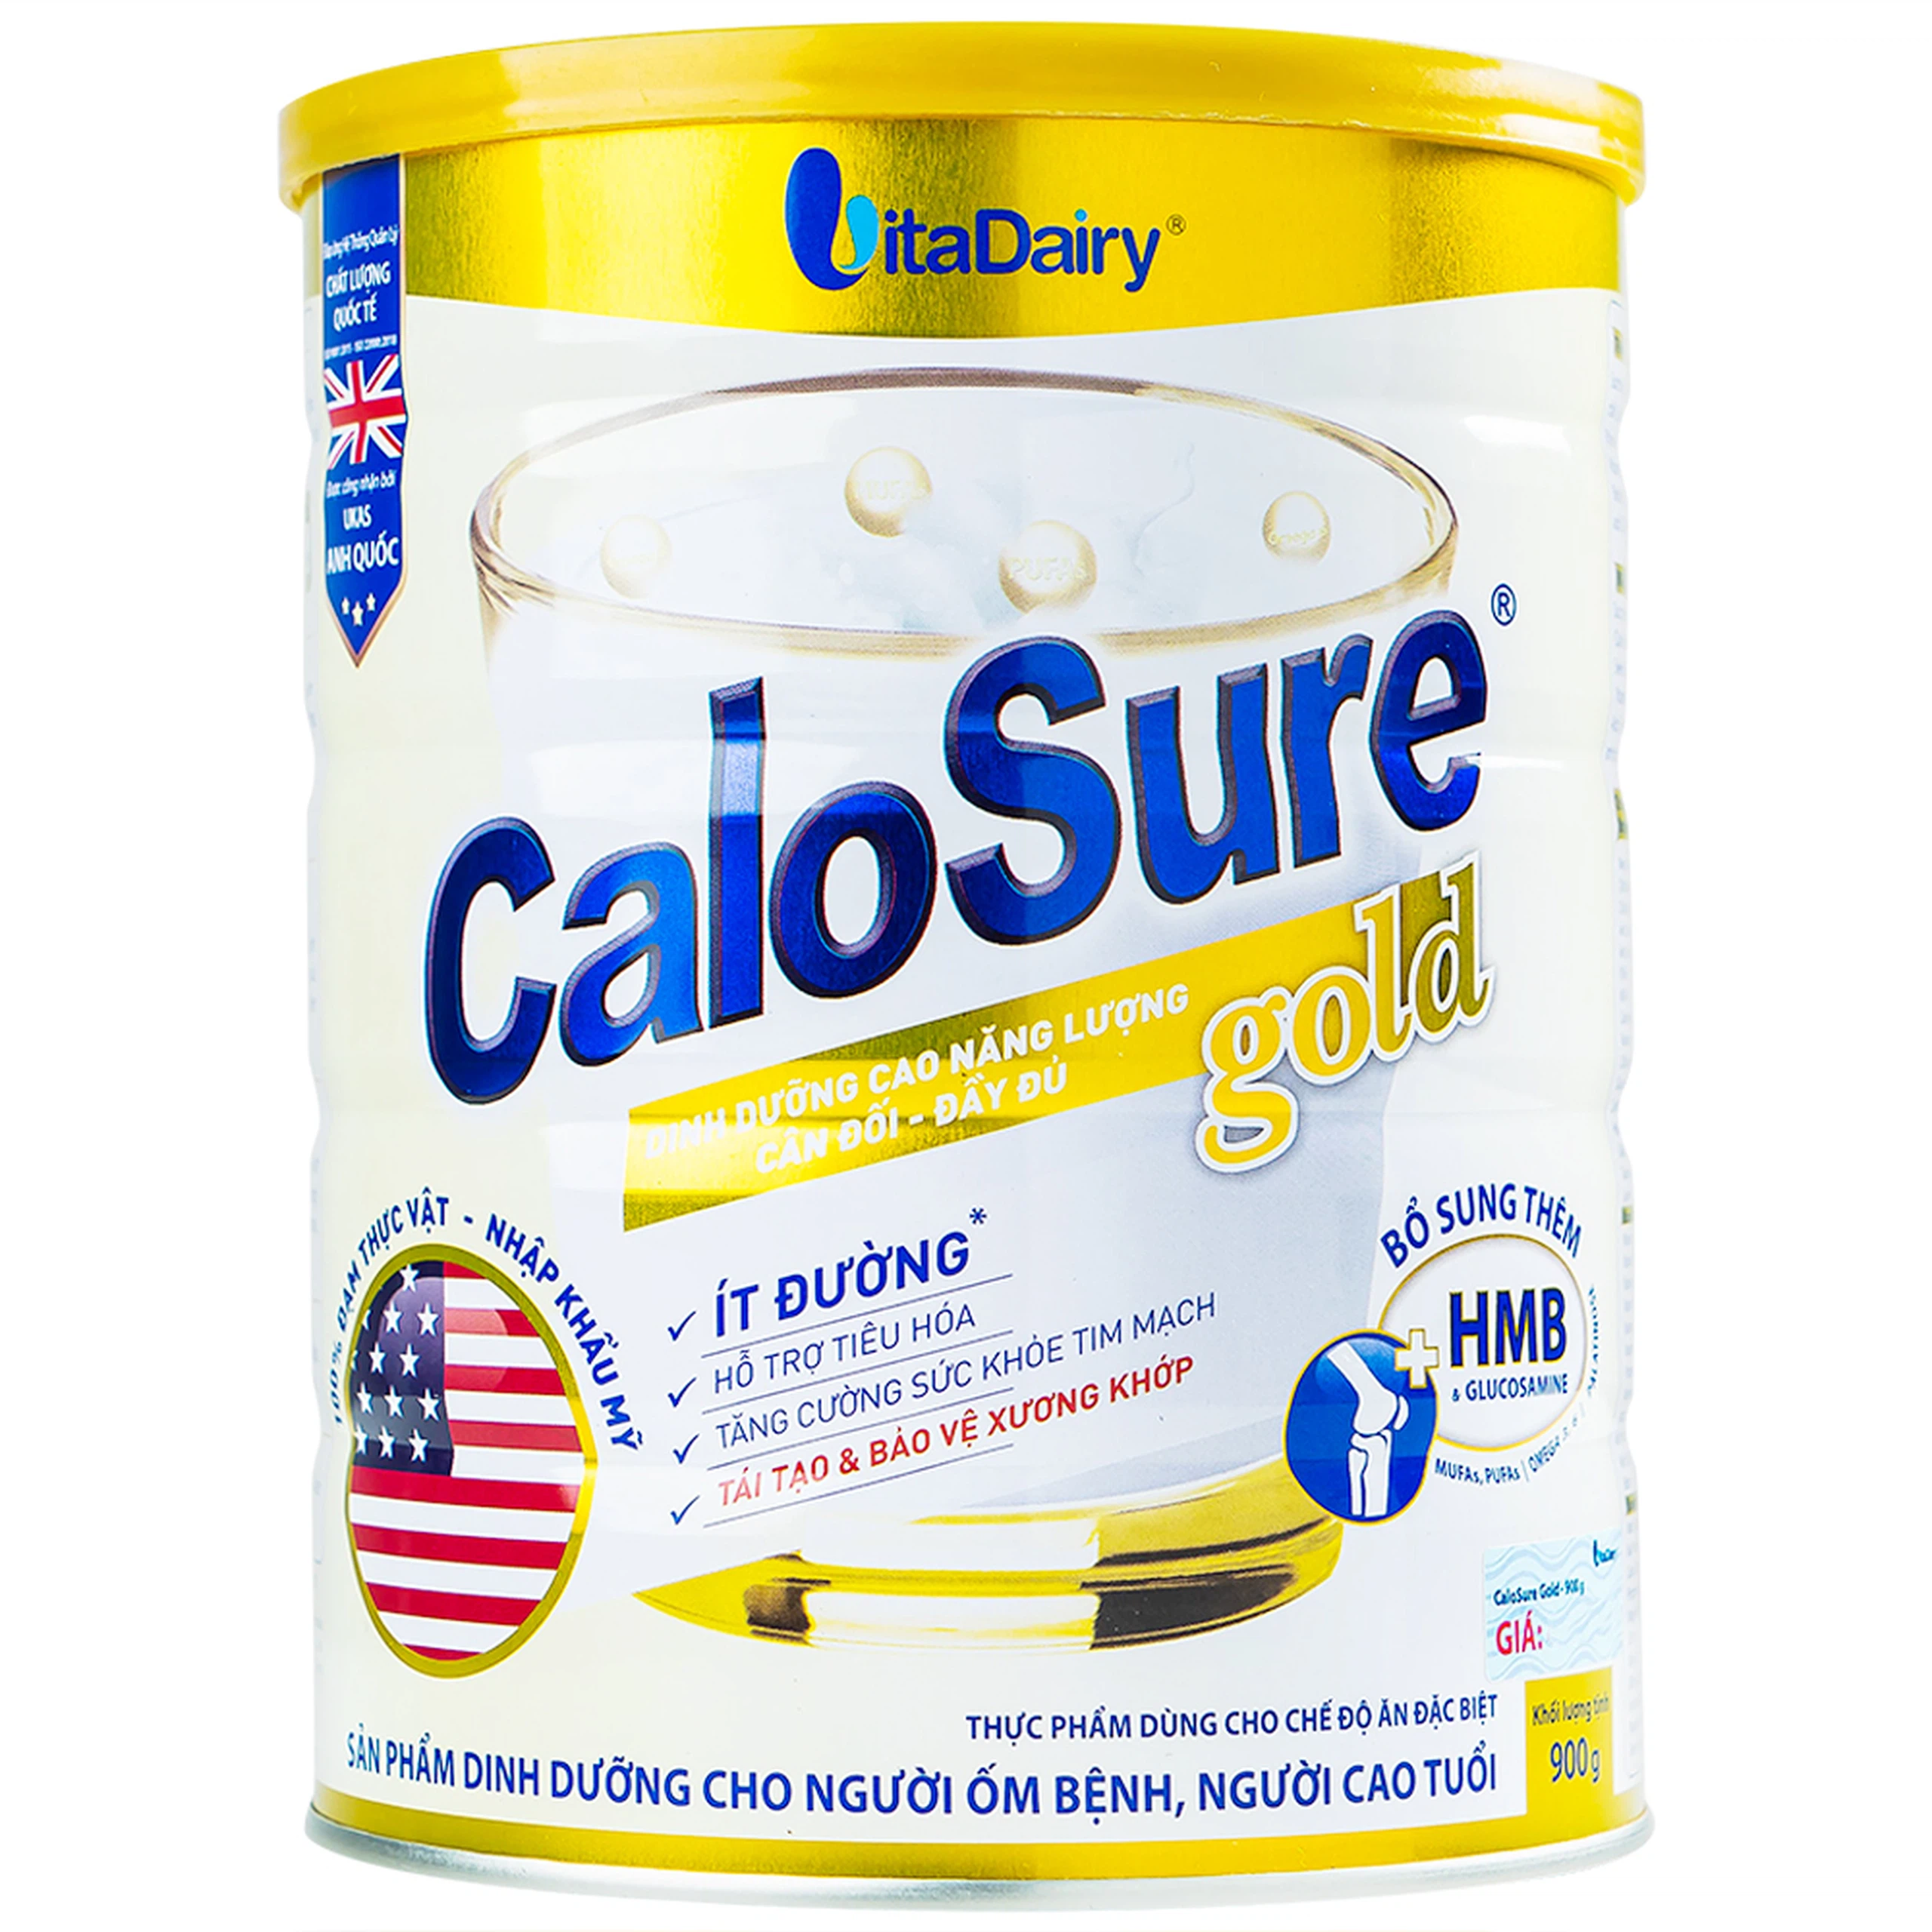 Sữa bột CaloSure gold Vitadairy ít đường, tăng cường sức khỏe tim mạch, hồi phục sức khỏe (900g)